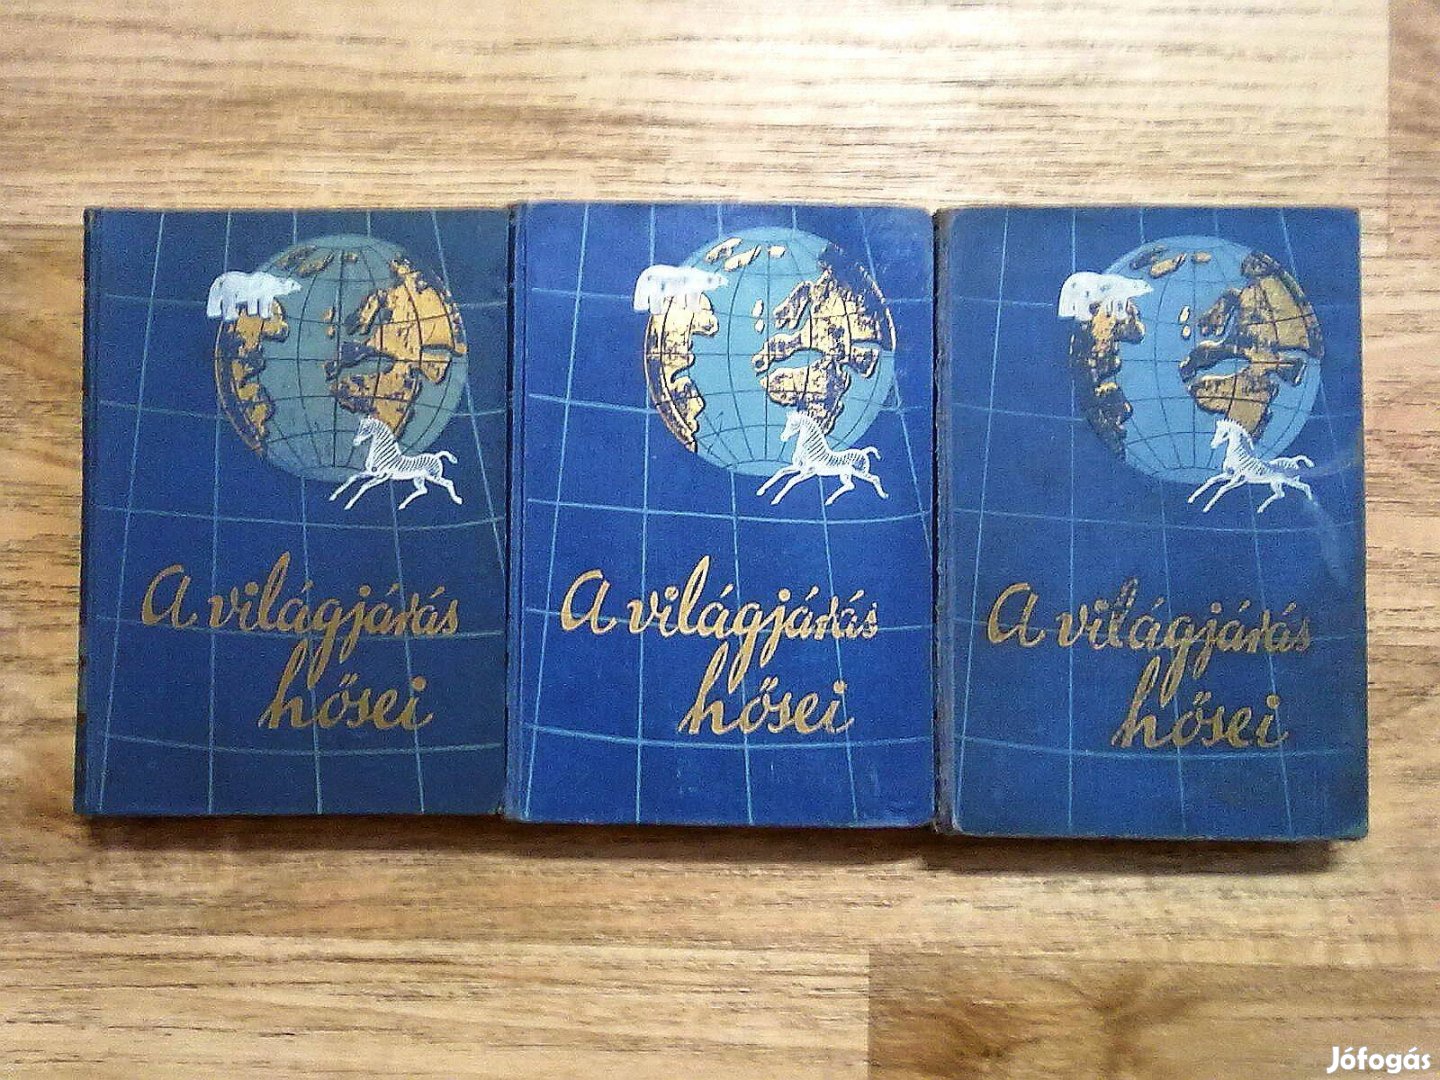 A világjárás hősei sorozat 3 kötete egy csomagban